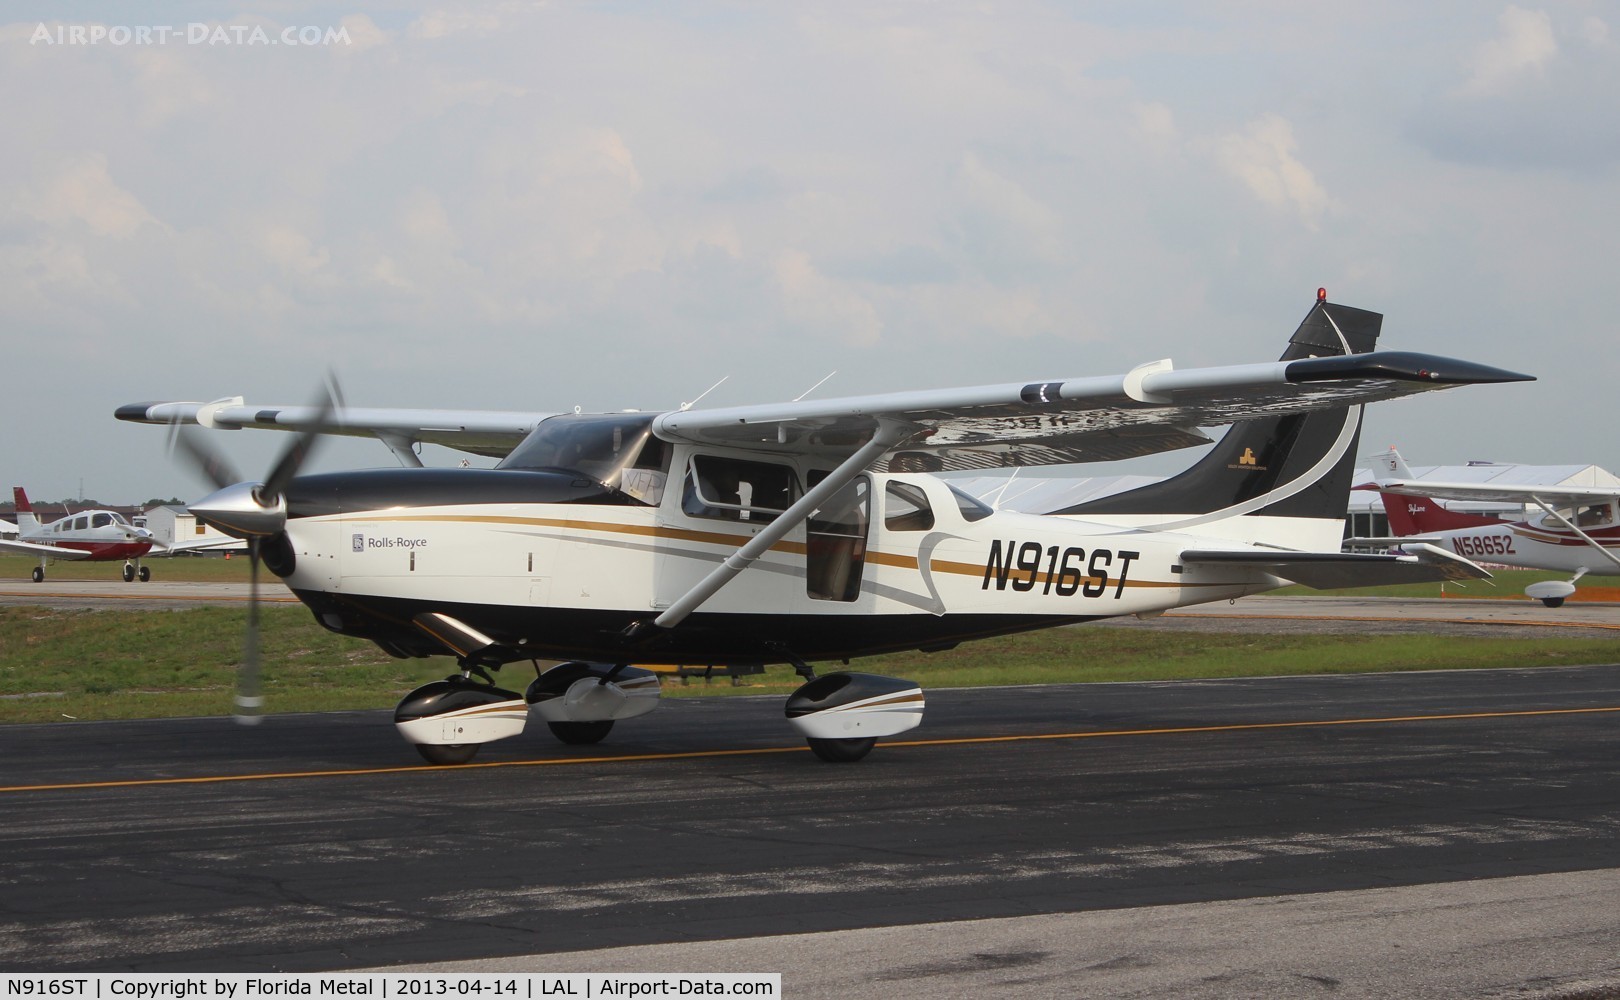 N916ST, 1999 Cessna 206H Stationair C/N 20608045, Cessna 206H